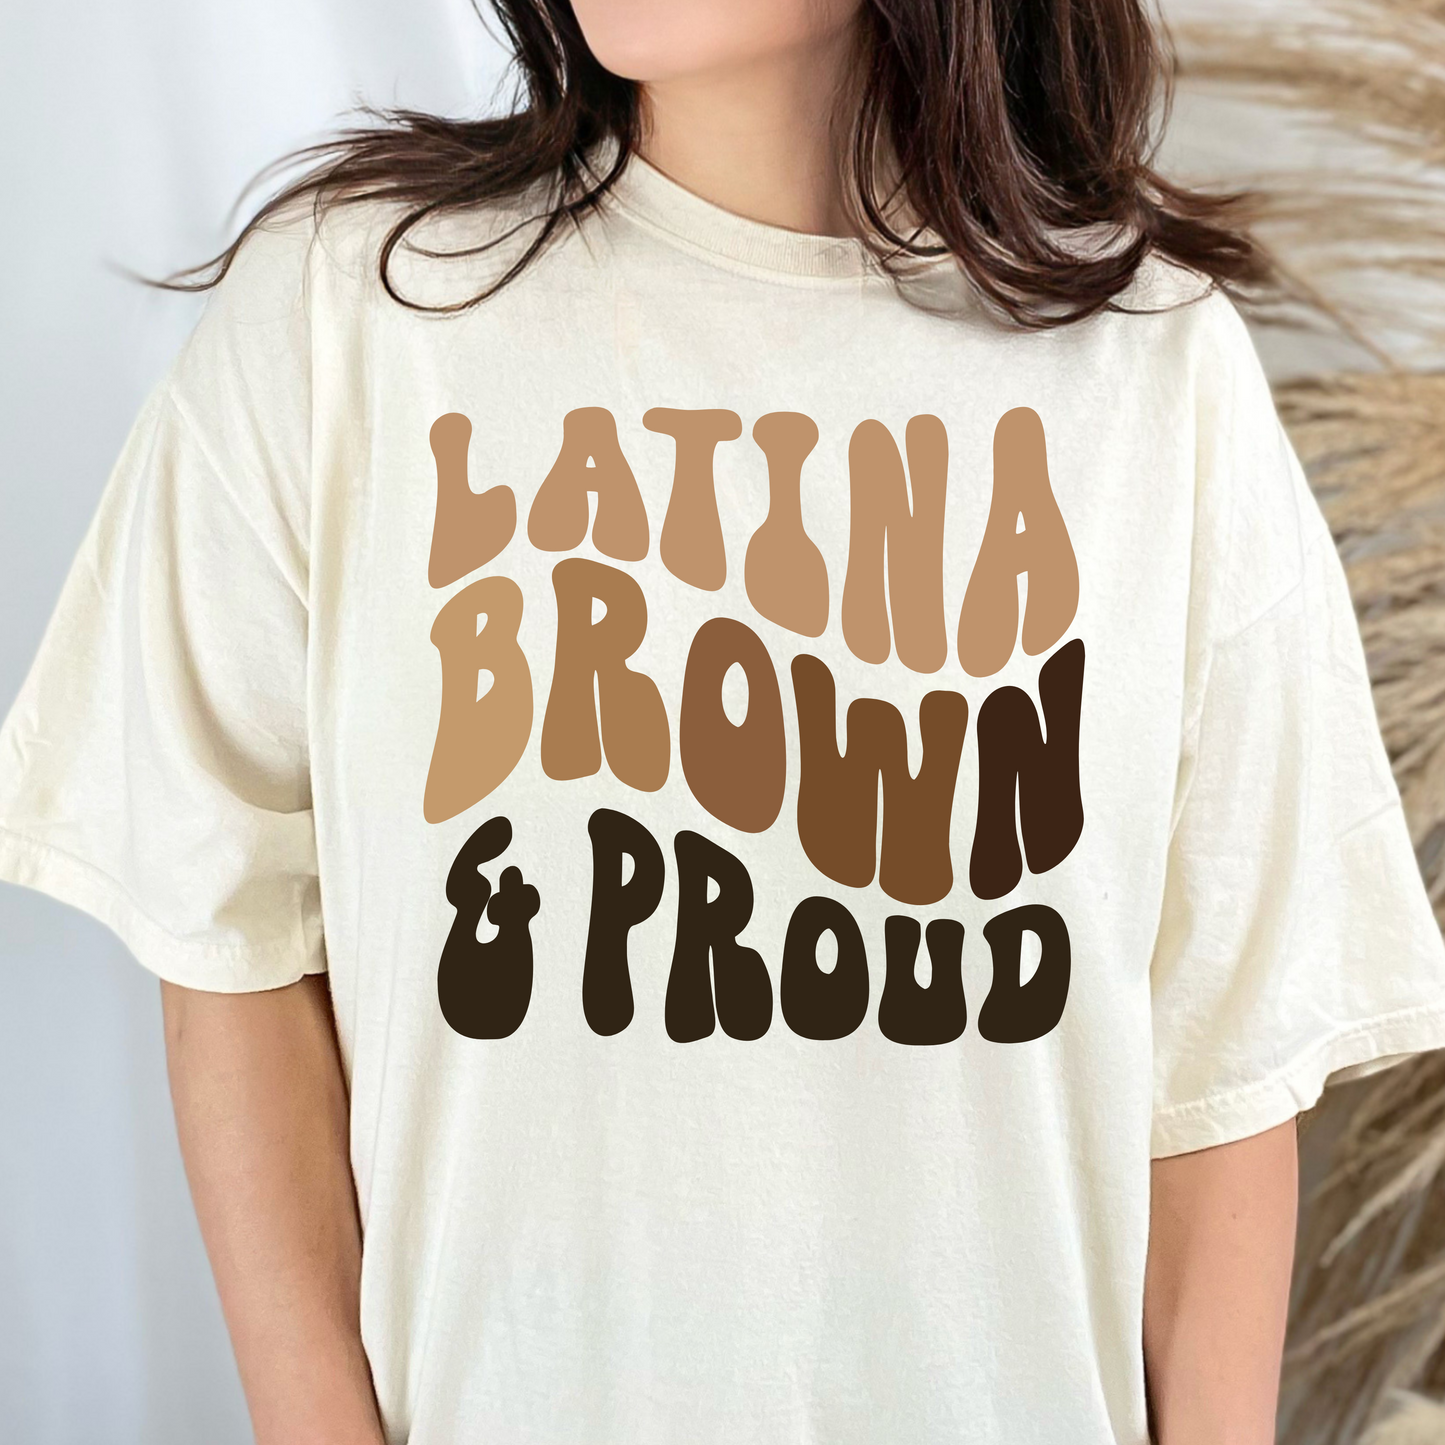 Latina, Brown & Proud